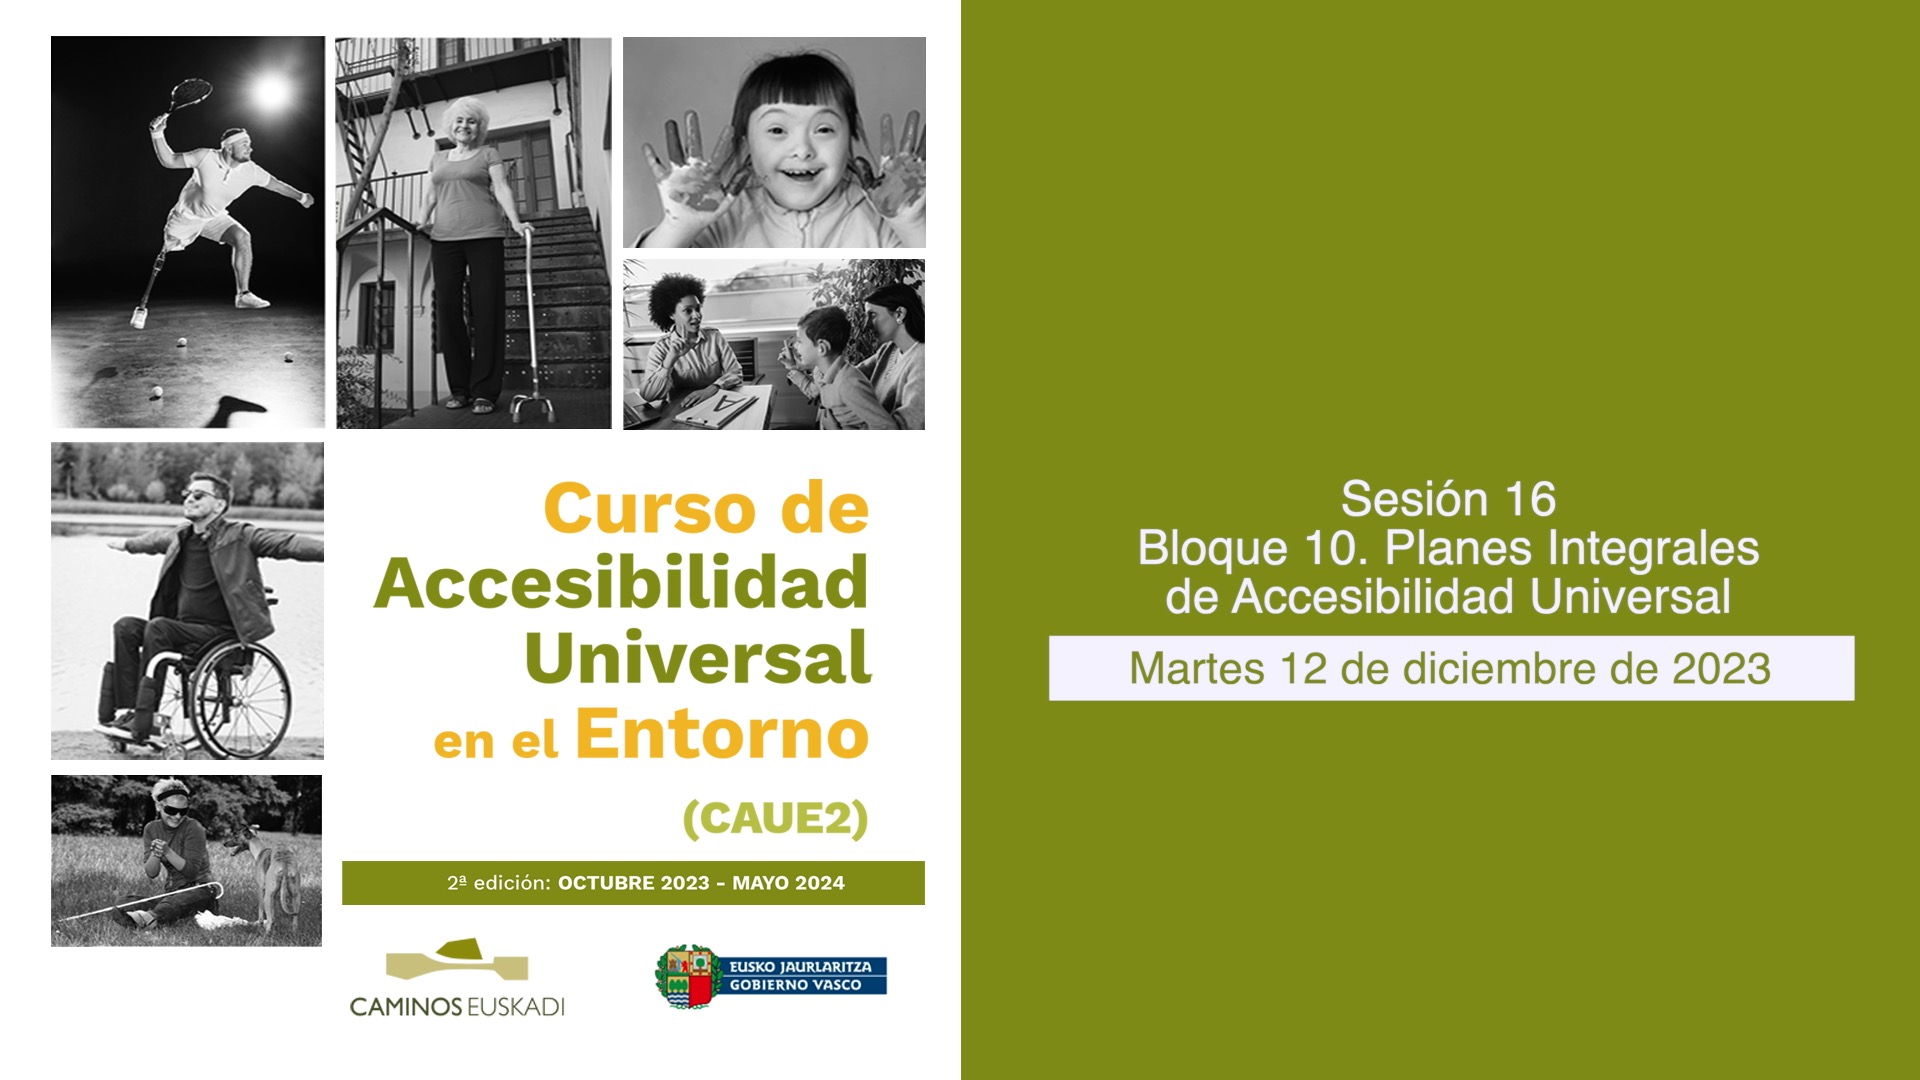 Sesión 16 - Bloque 10. Planes Integrales de Accesibilidad Universal